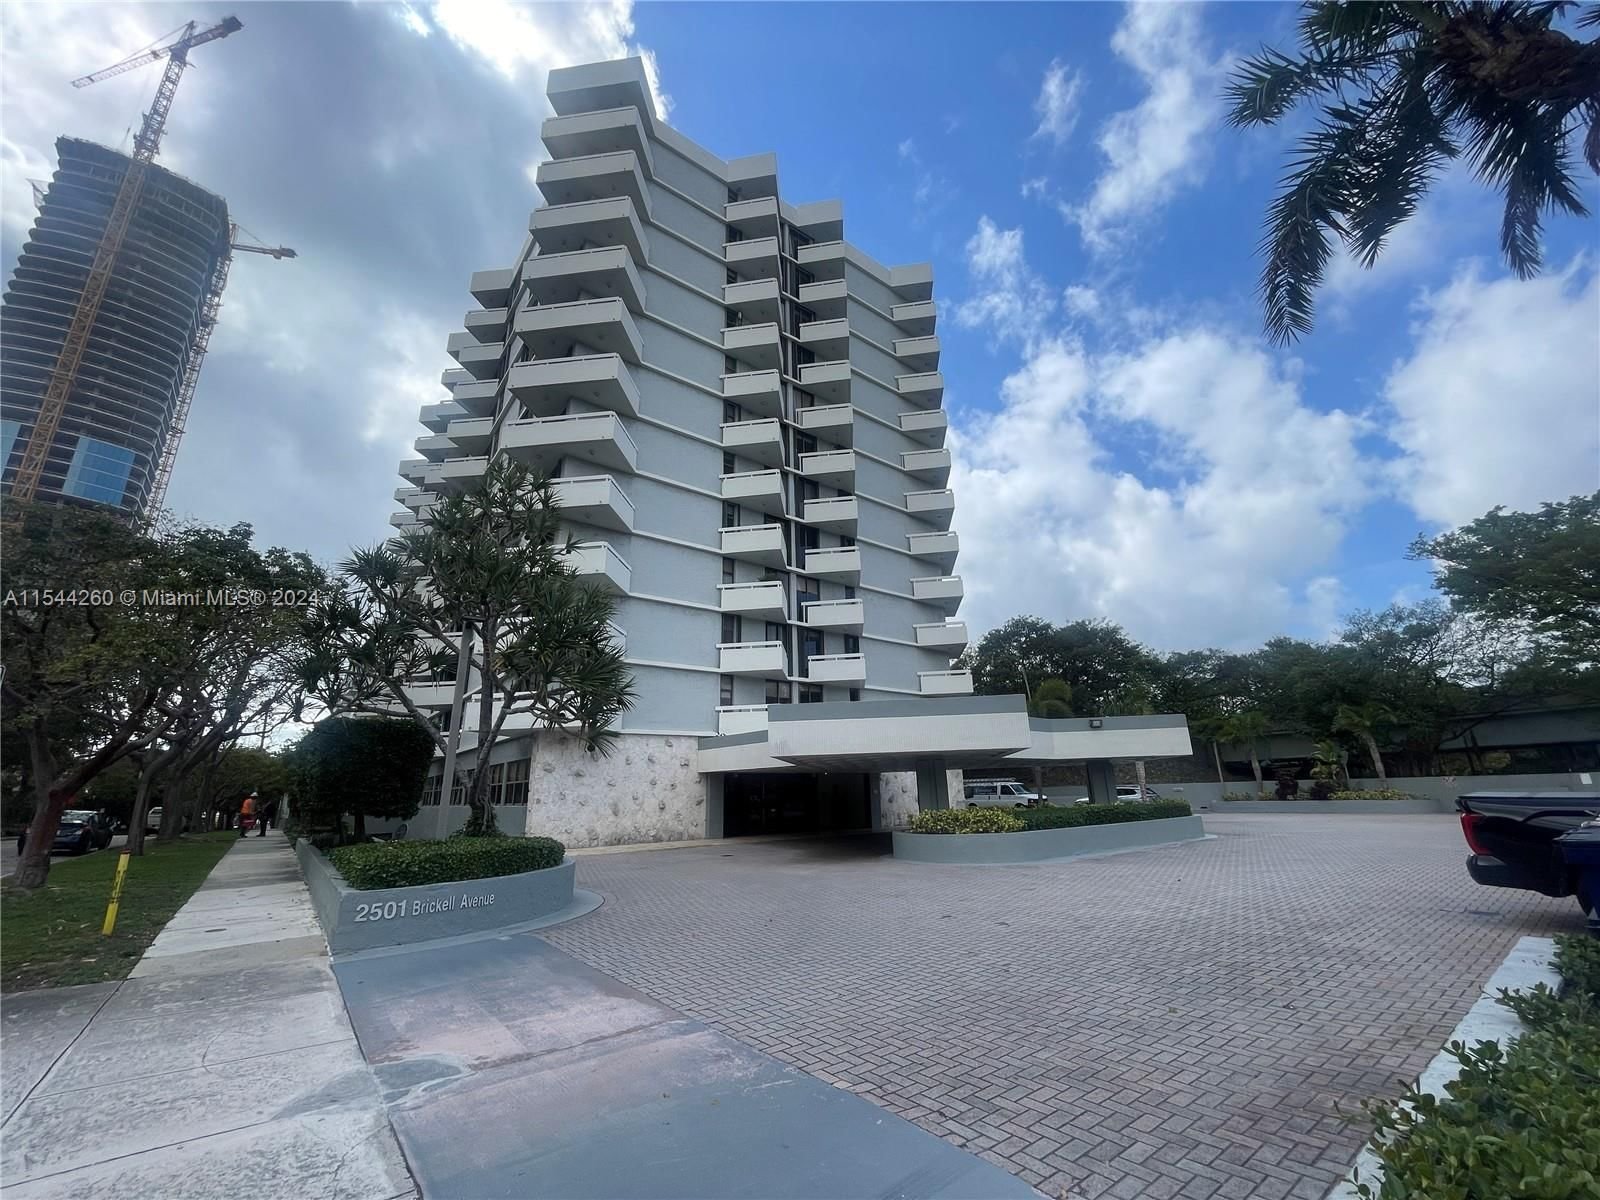 Real estate property located at 2501 Brickell Ave #1202, Miami-Dade County, BRICKELL PARK CONDO, Miami, FL